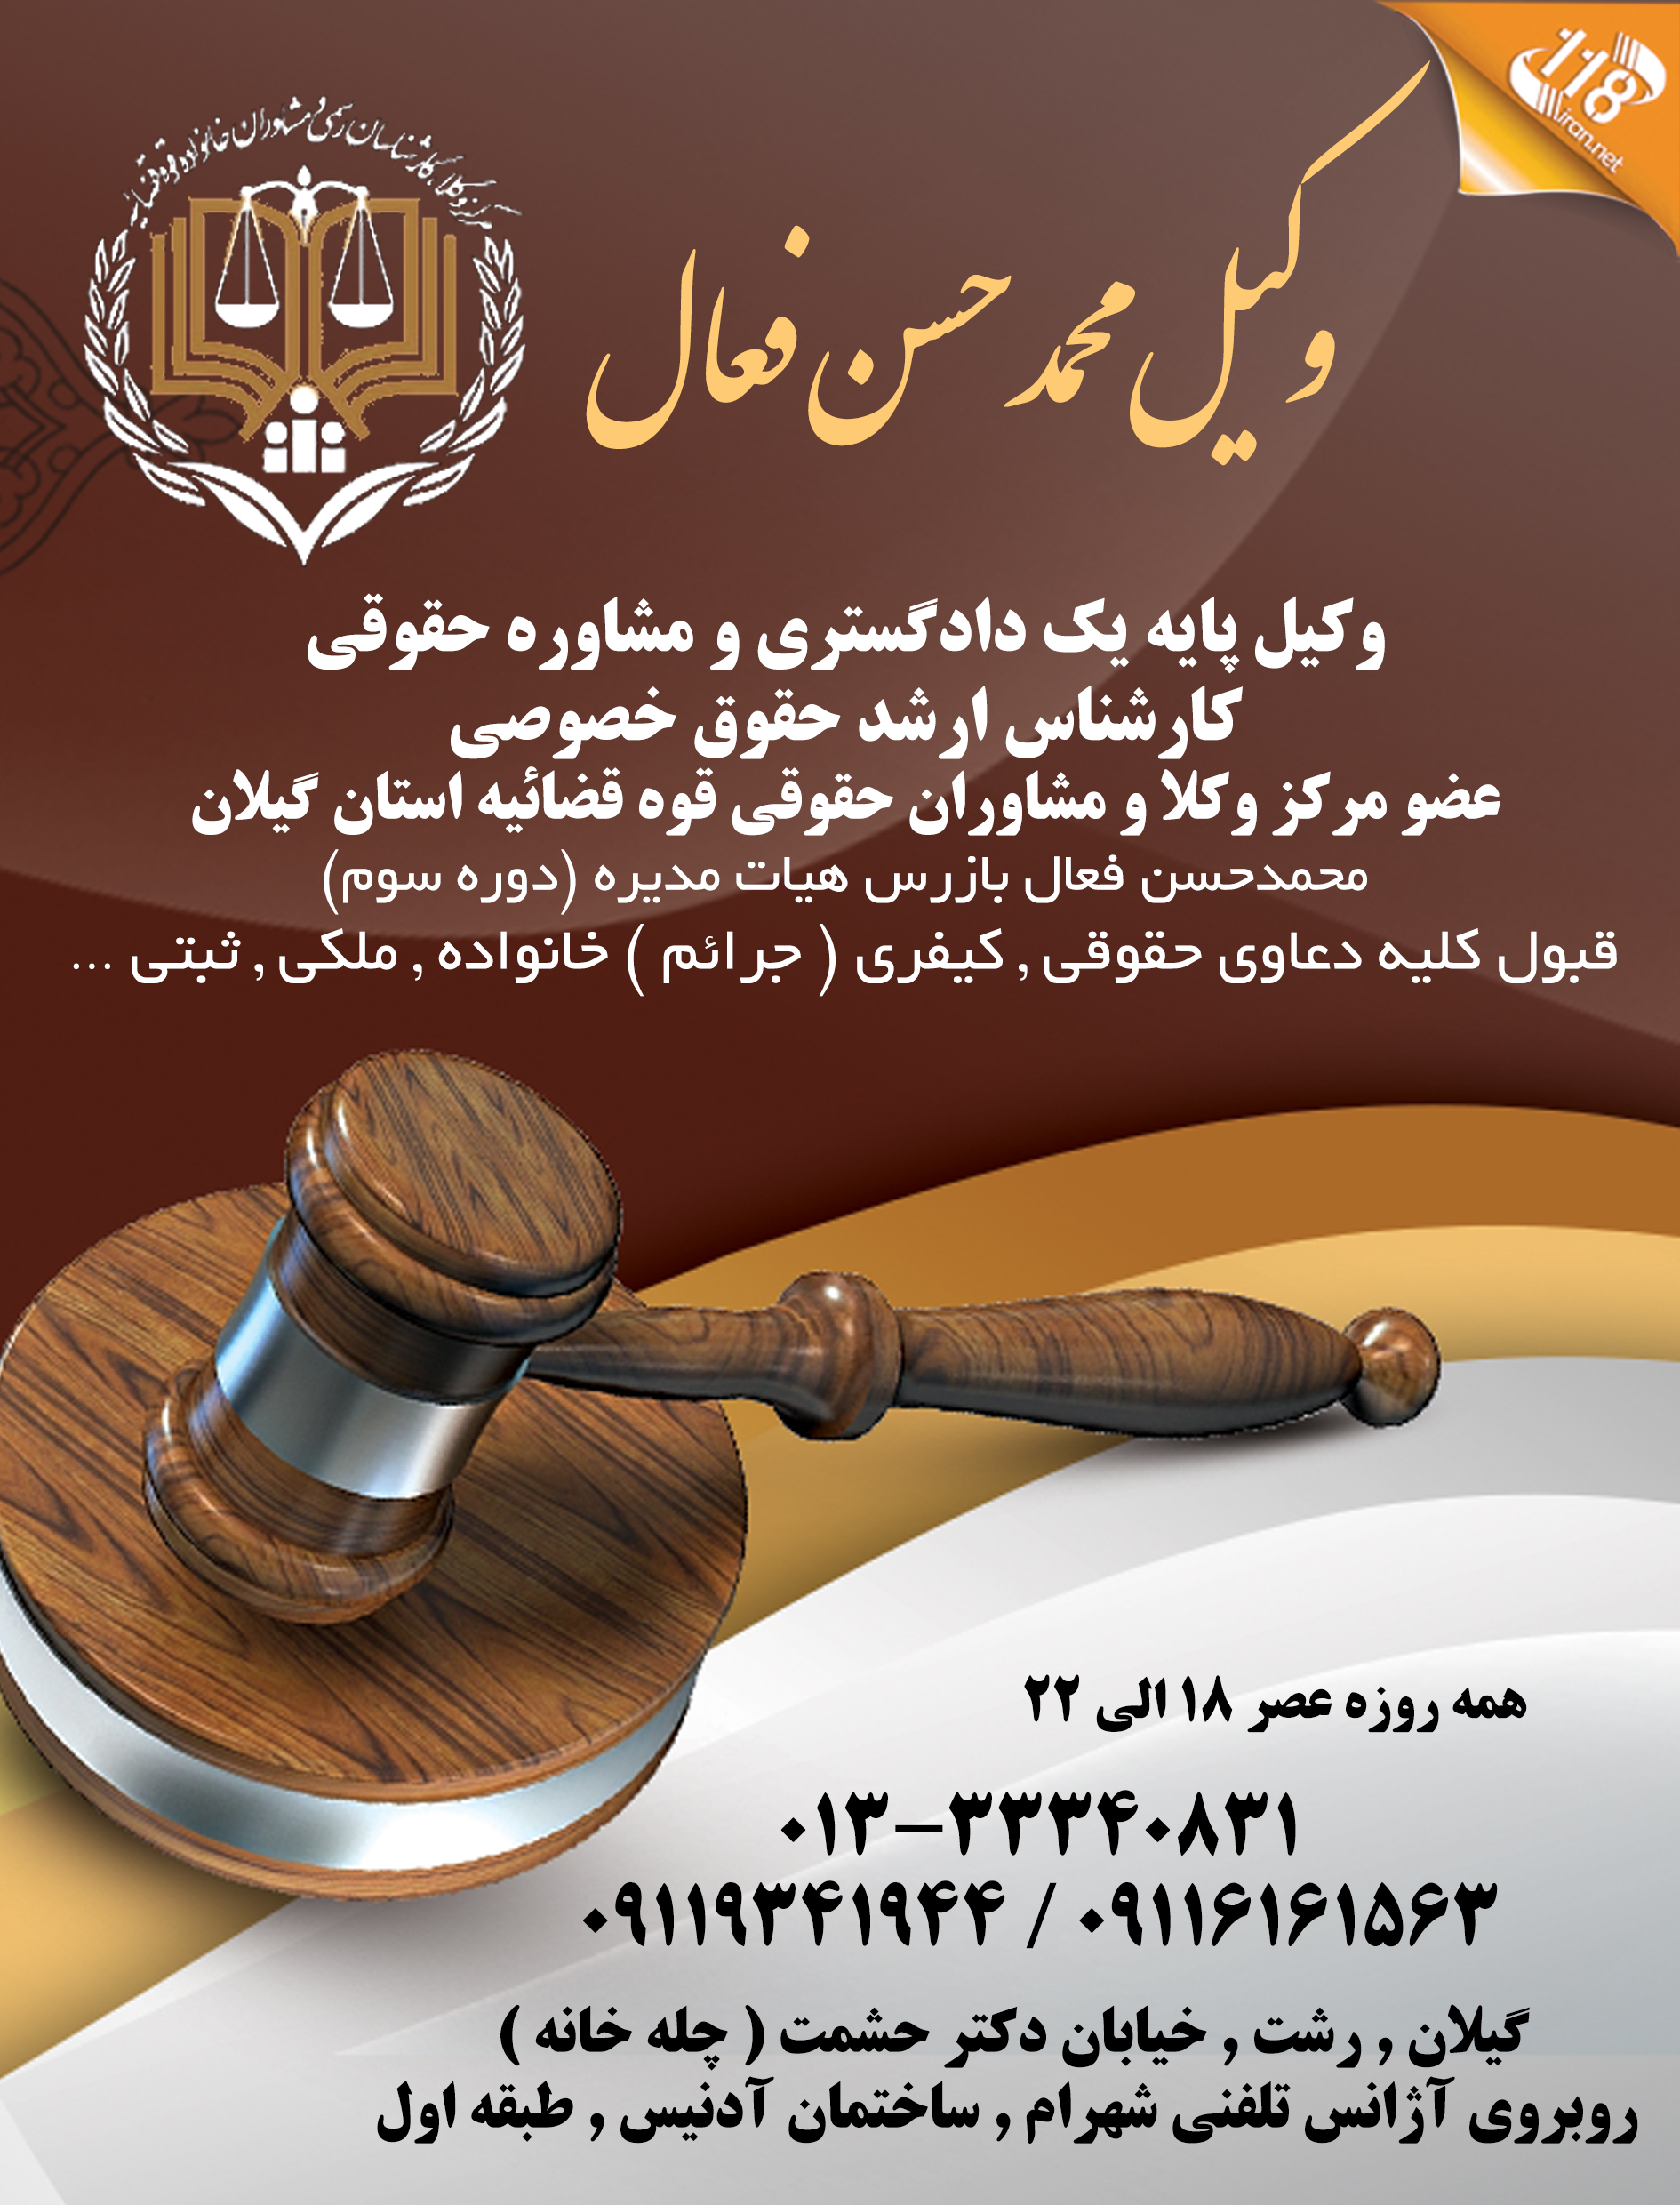 بهترین وکیل محمدحسن فعال